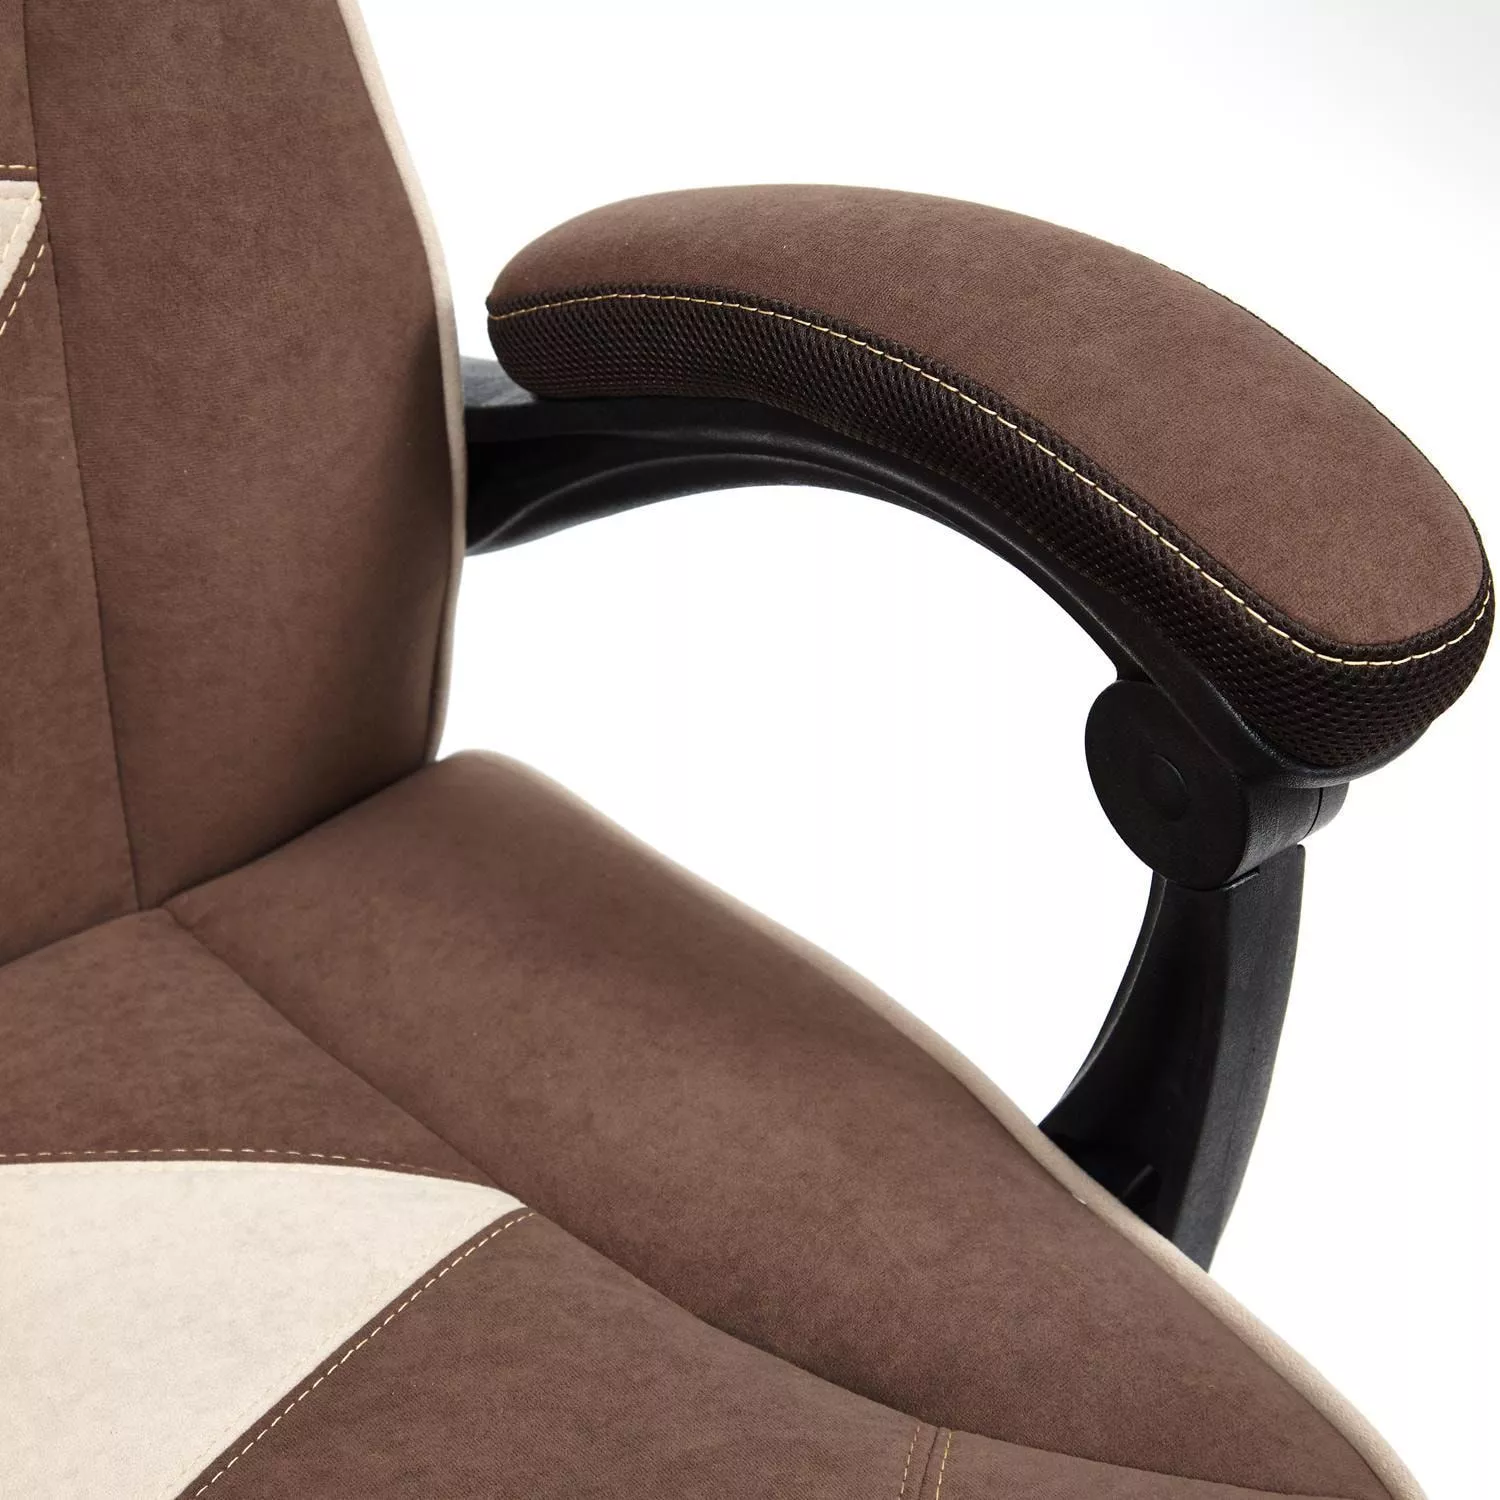 Кресло ARENA коричневый / бежевый